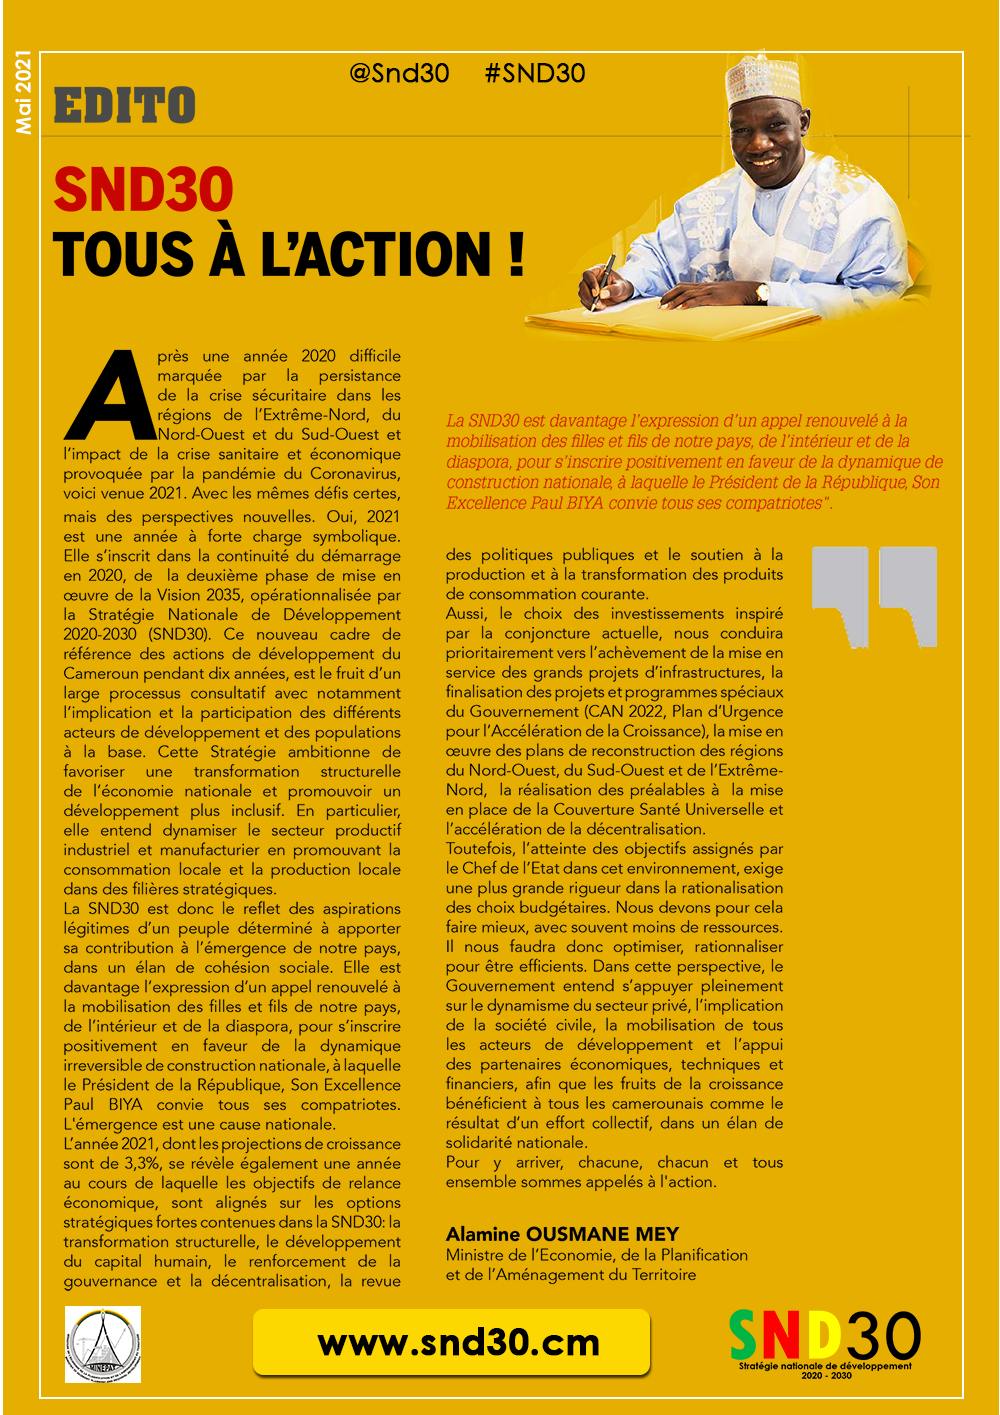 SND30 : TOUS À L’ACTION ! Par alamine Ousmane Mey